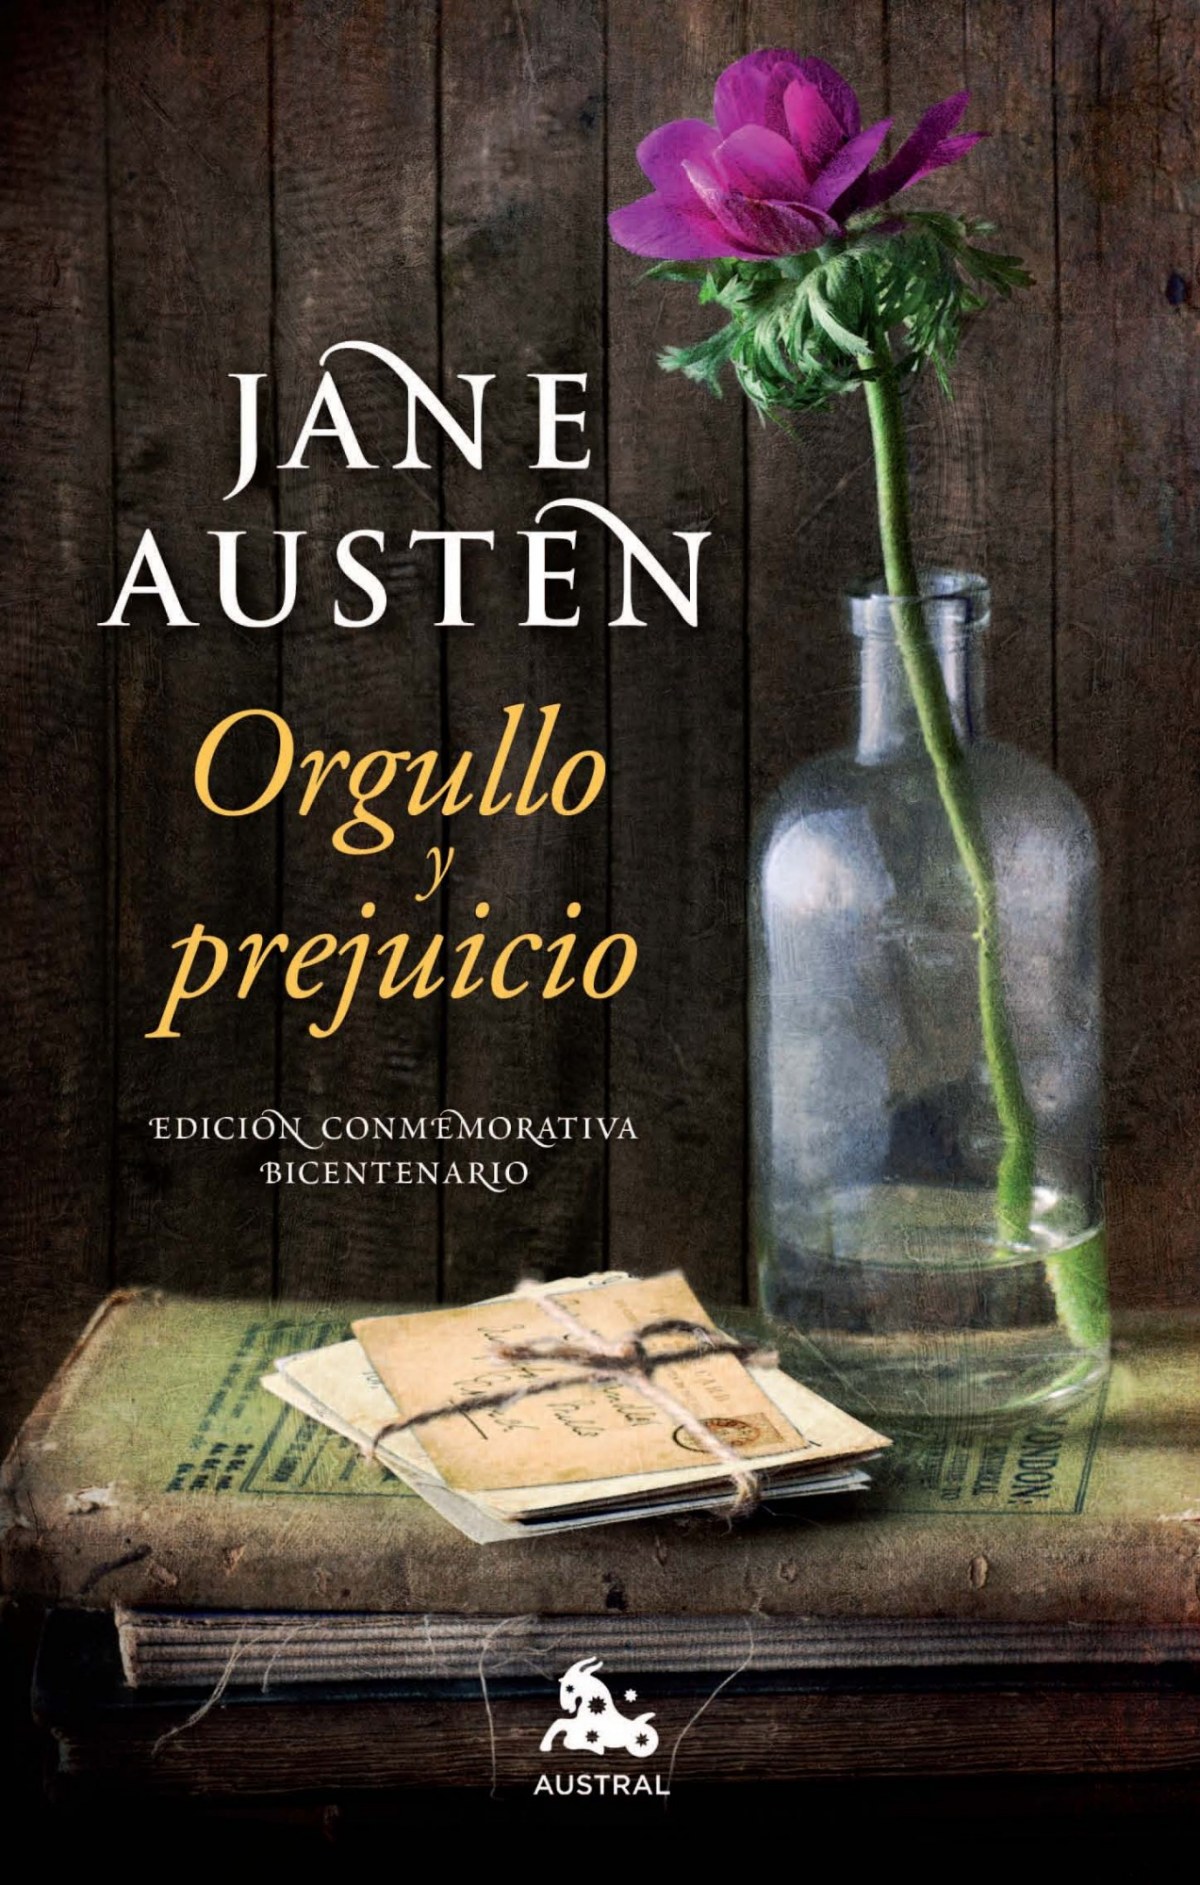 Orgullo y prejuicio - Austen, Jane